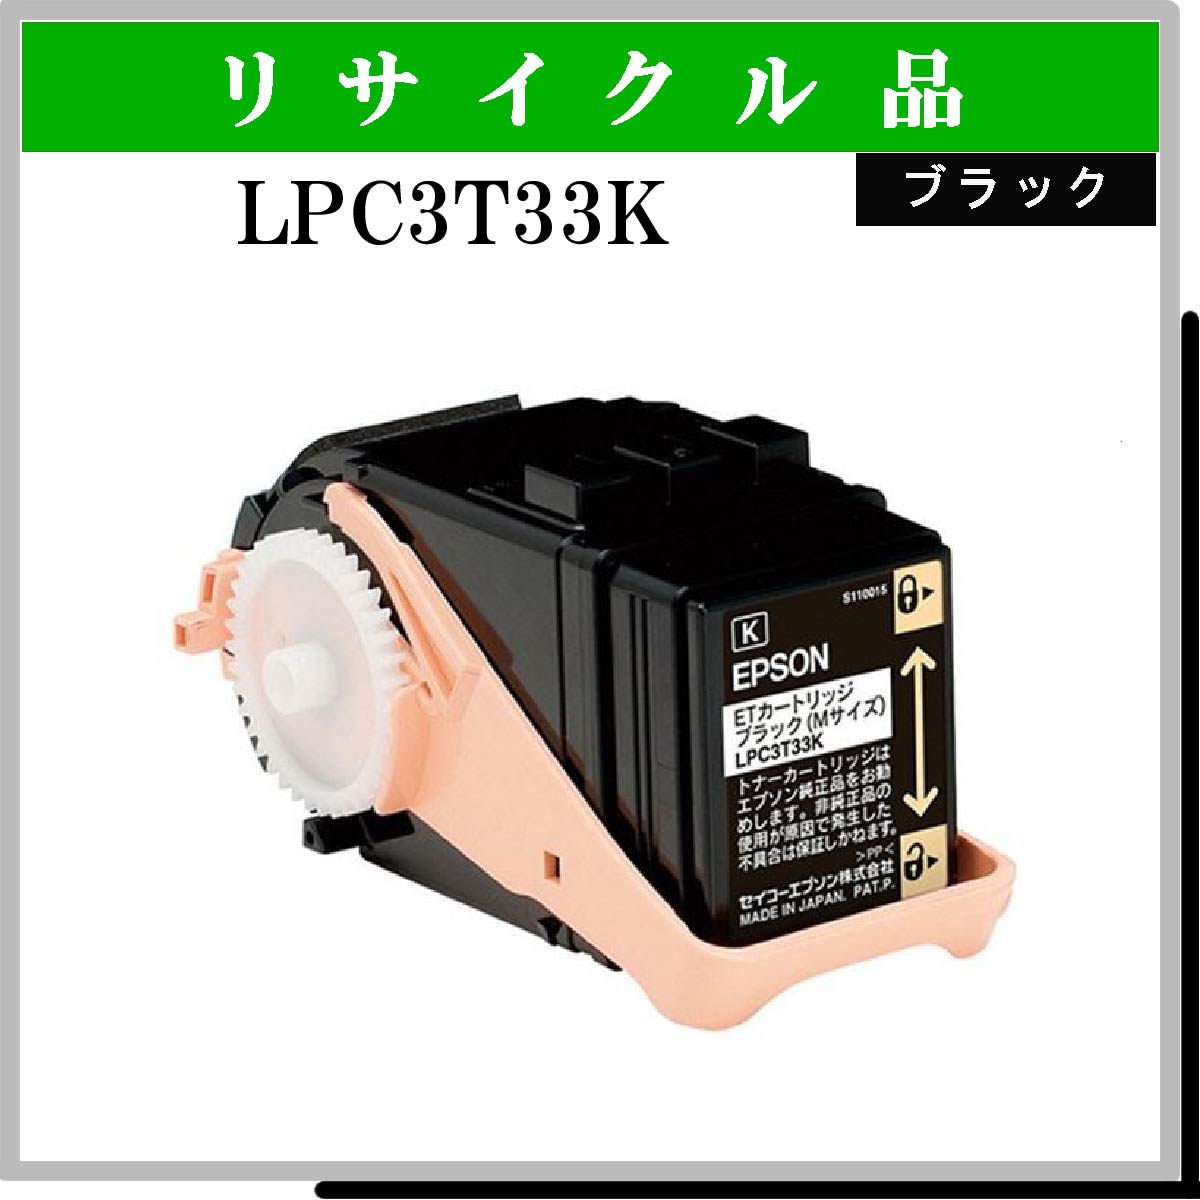 LPC3T33K